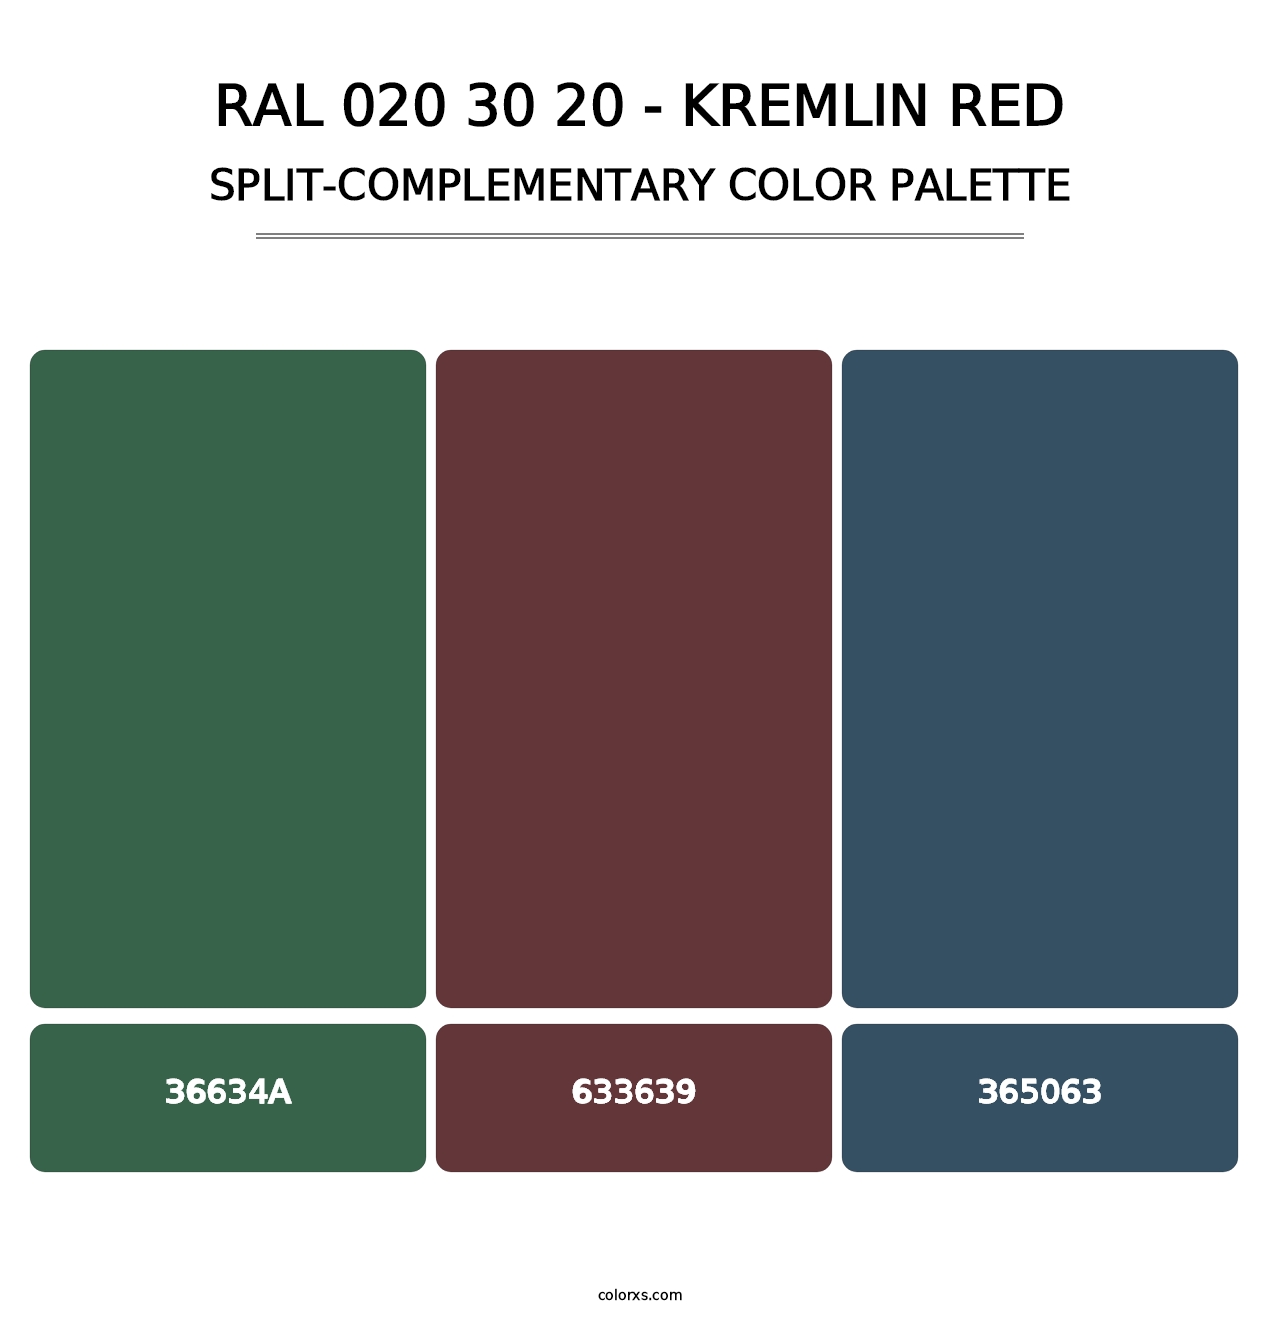 RAL 020 30 20 - Kremlin Red - Split-Complementary Color Palette